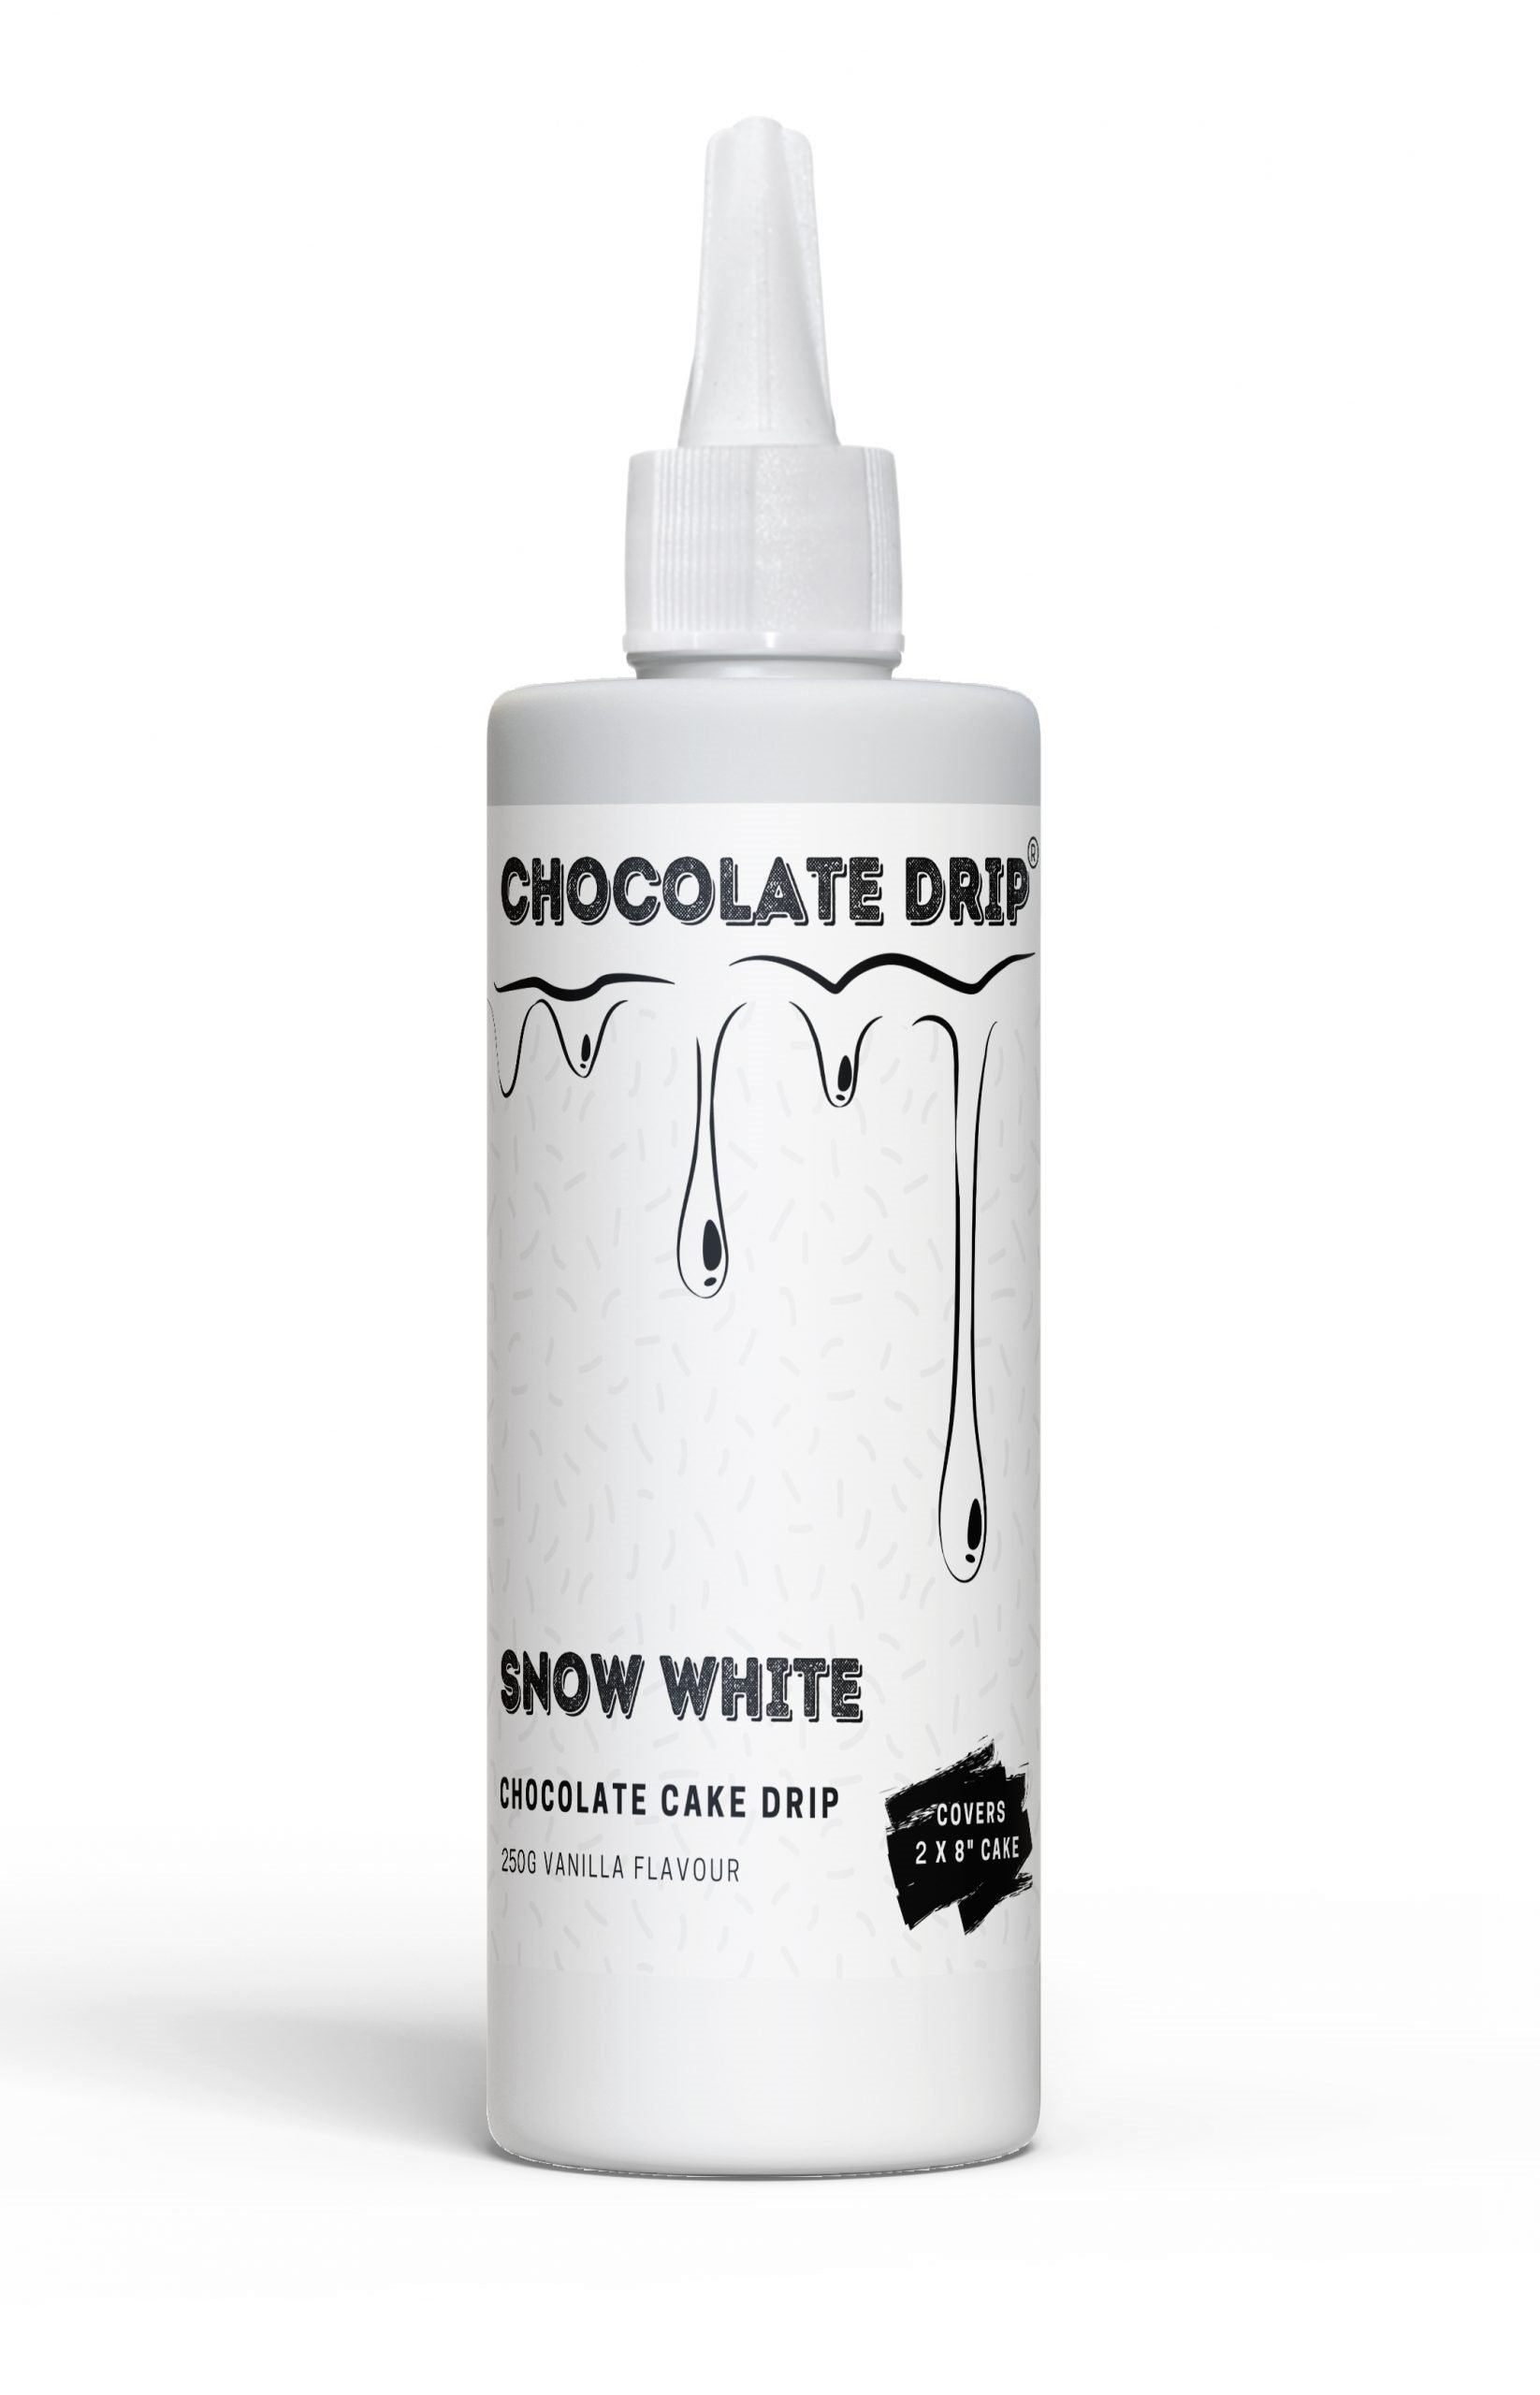 Chocolate Drip Snow White 250g